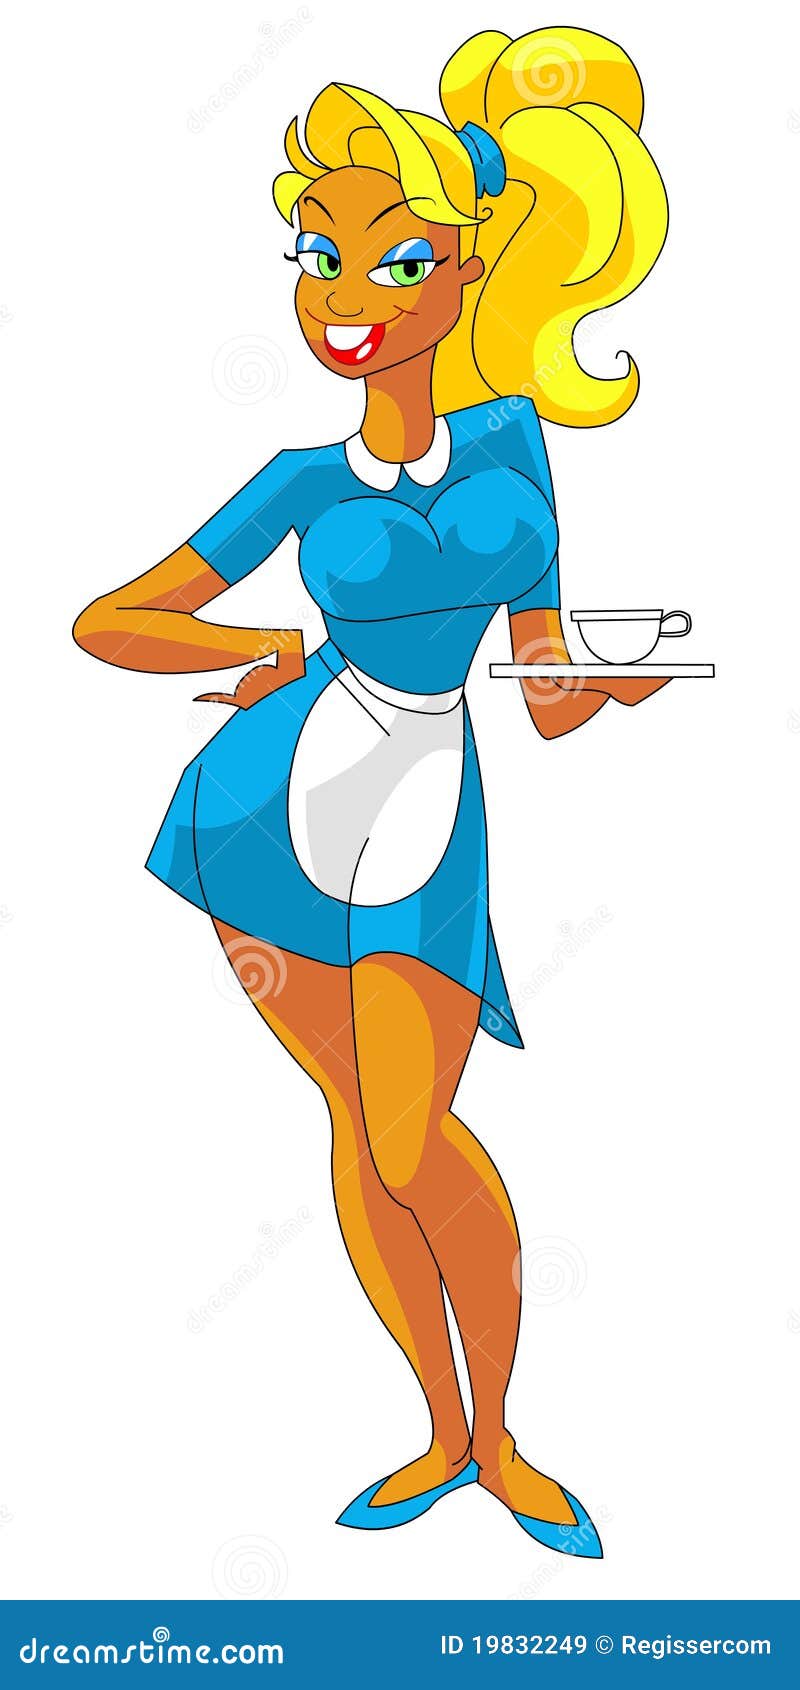 Cameriera di bar attraente con una tazza di caffè. Illustrazione Colourful della cameriera di bar sexy con una tazza di caffè.